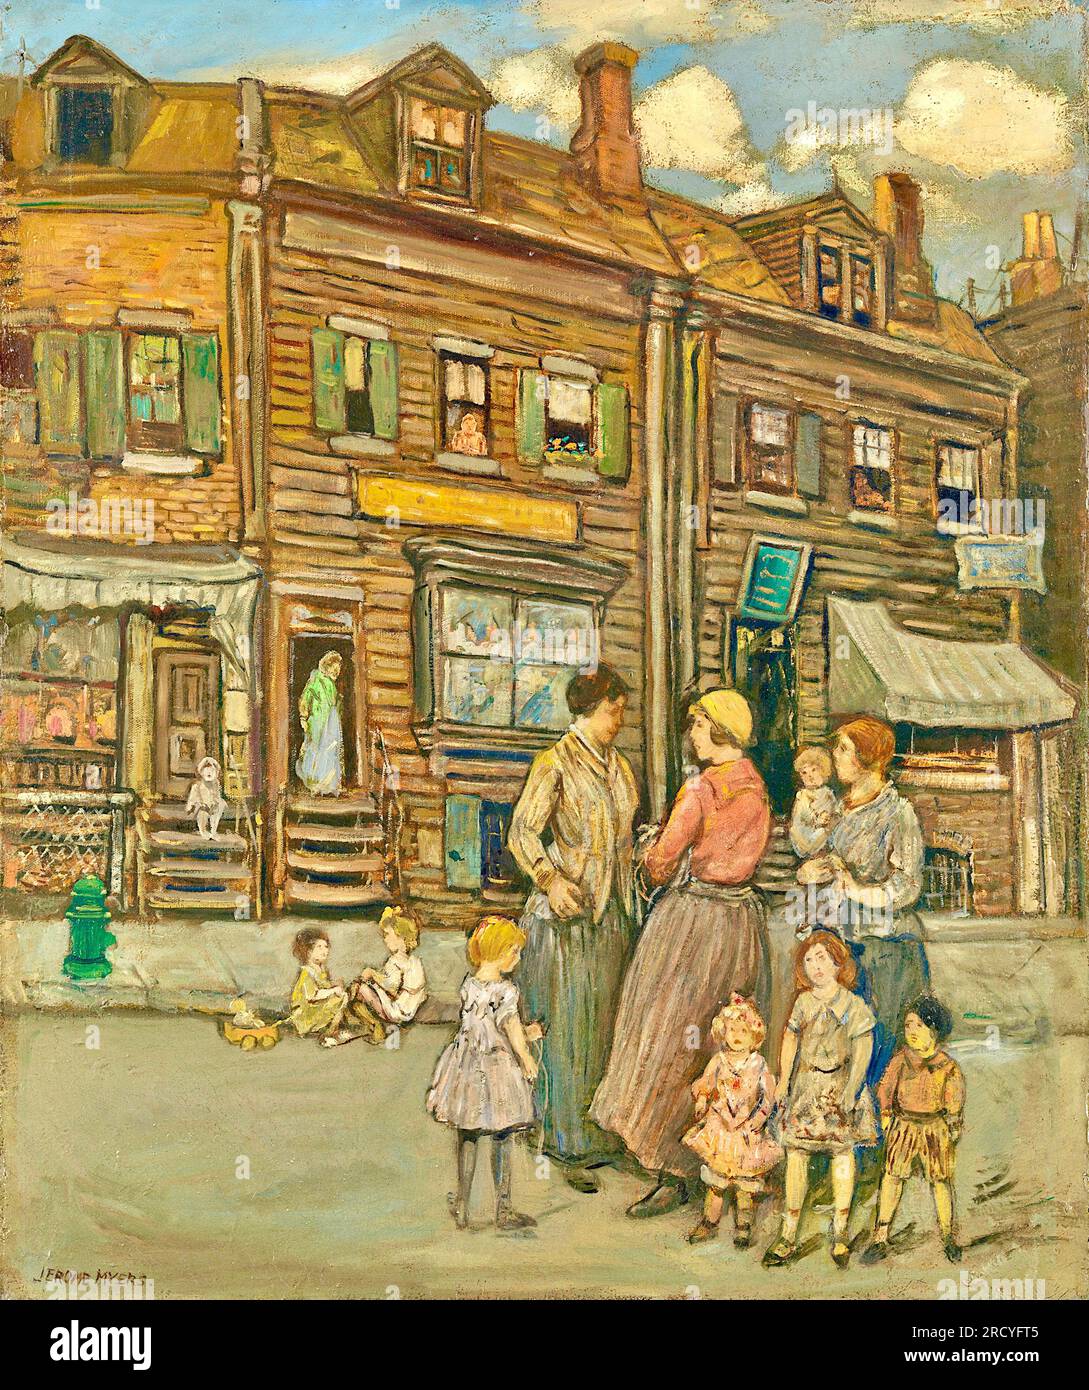 Jerome Myers (amerikanischer Künstler) - Street Group - Eine Gruppe von Leuten trifft sich auf der Straße - 1923 Stockfoto